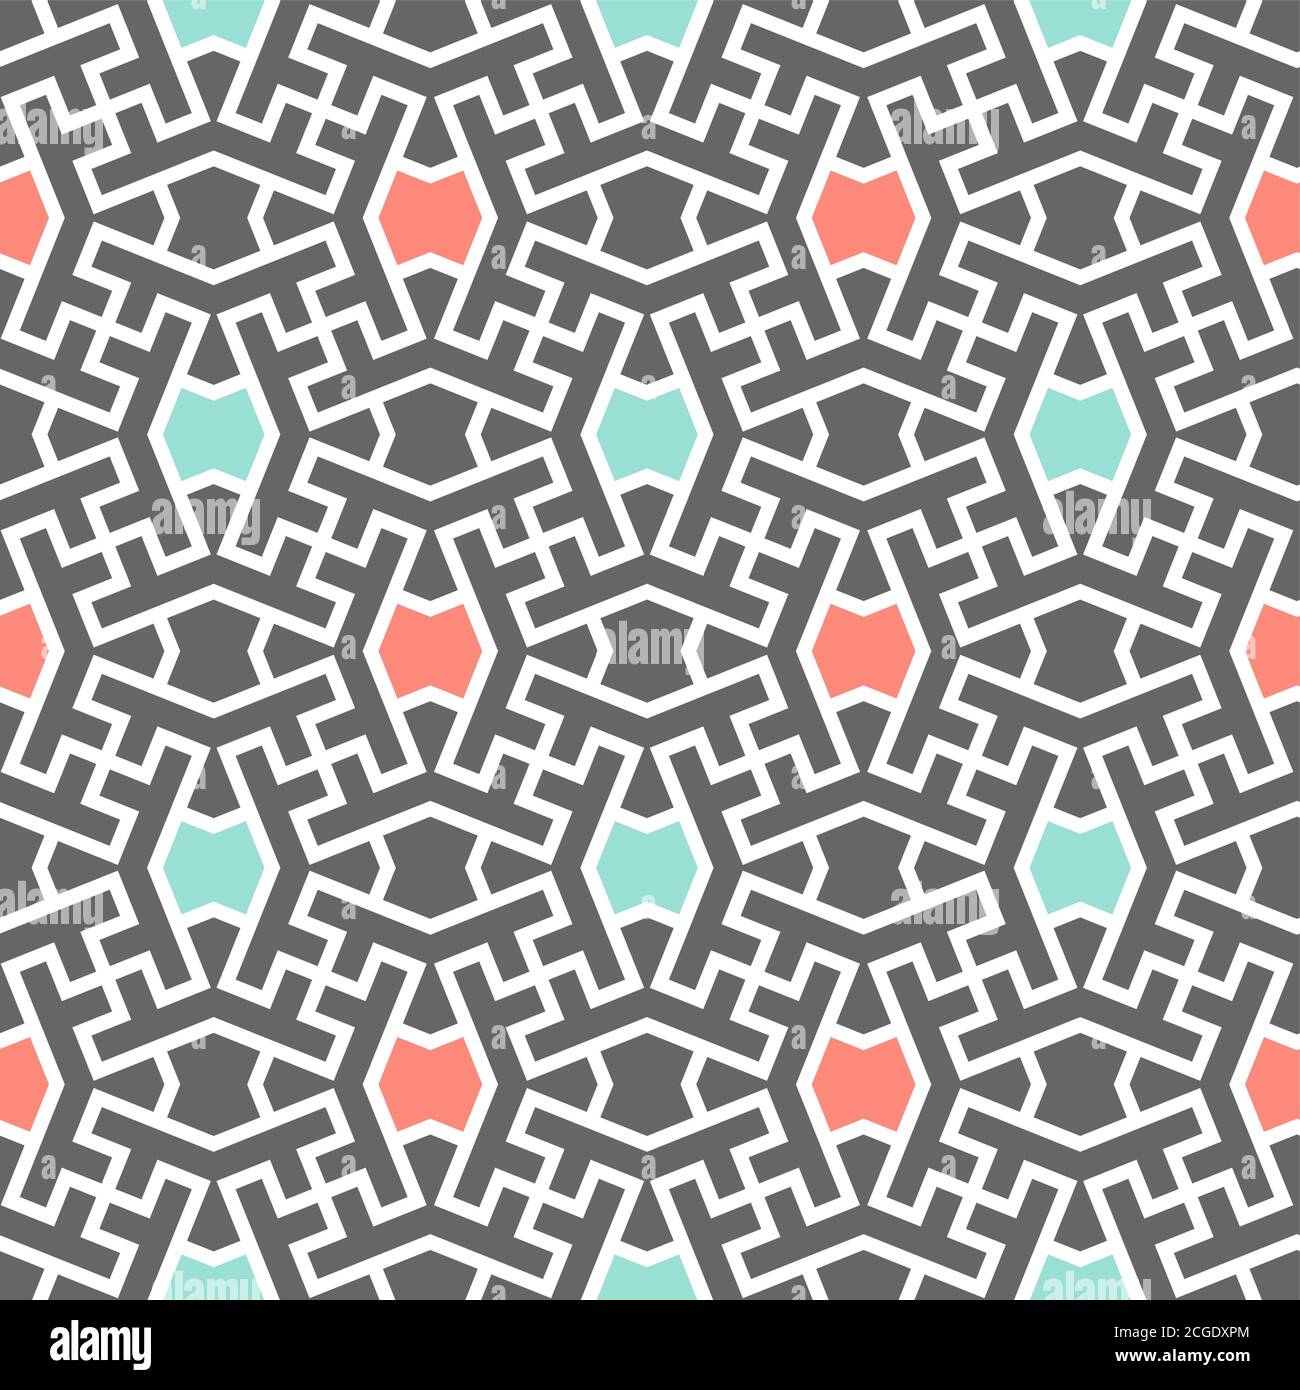 Modisches Muster mit Punktmuster. Iranischer Farbmix Vektor-Muster. Nahtlose geometrische wiederholende Textur für Stoff-Design, Stoff, Textil Stock Vektor